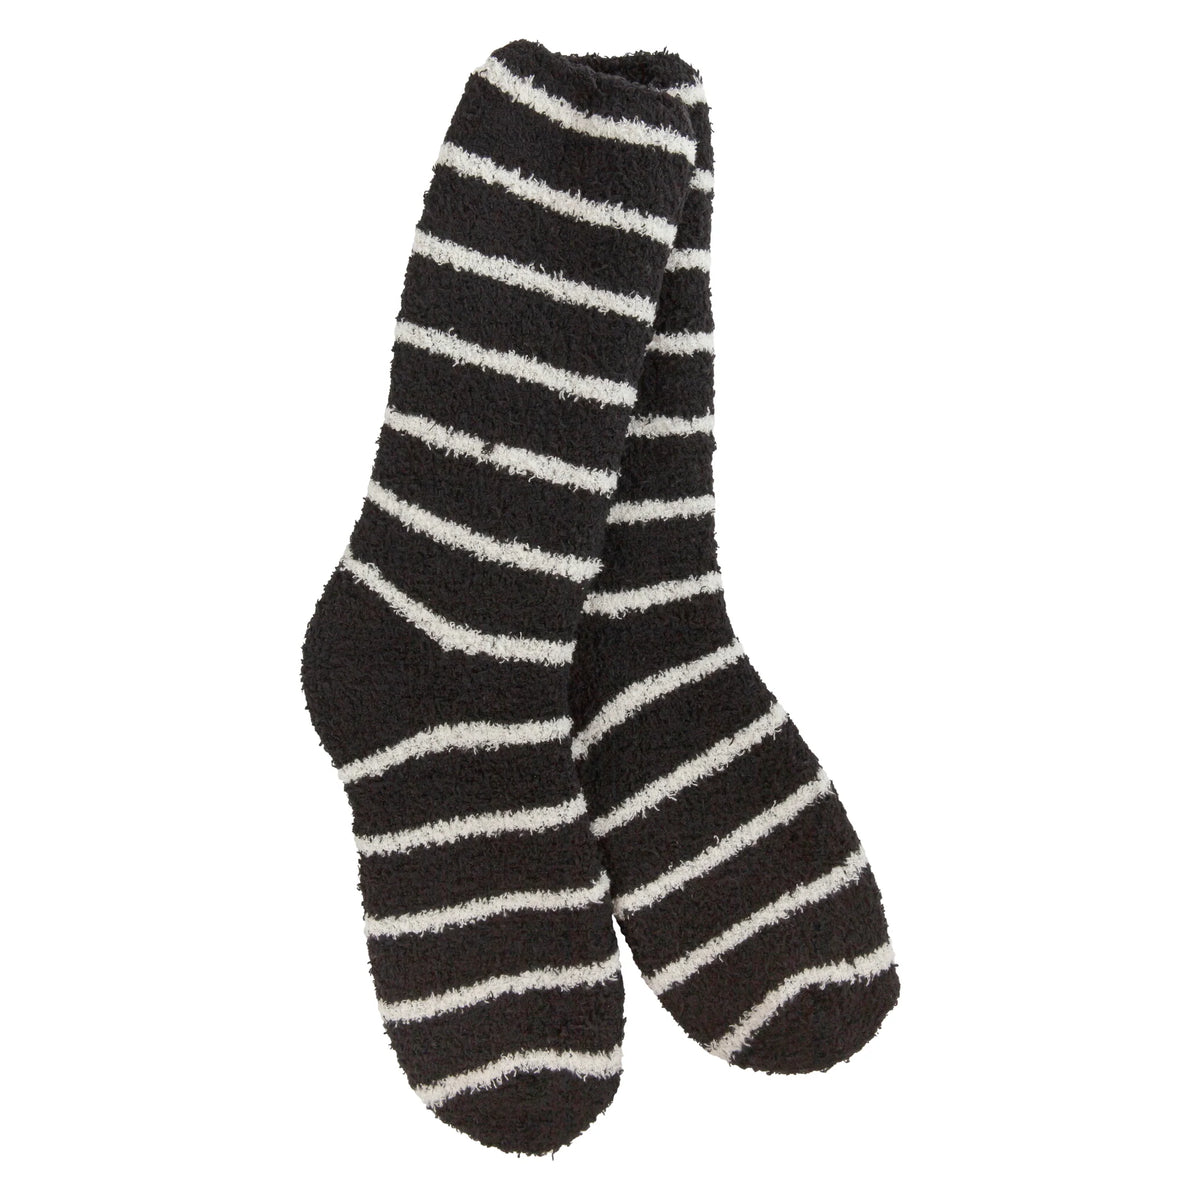 Holiday Christmas socks